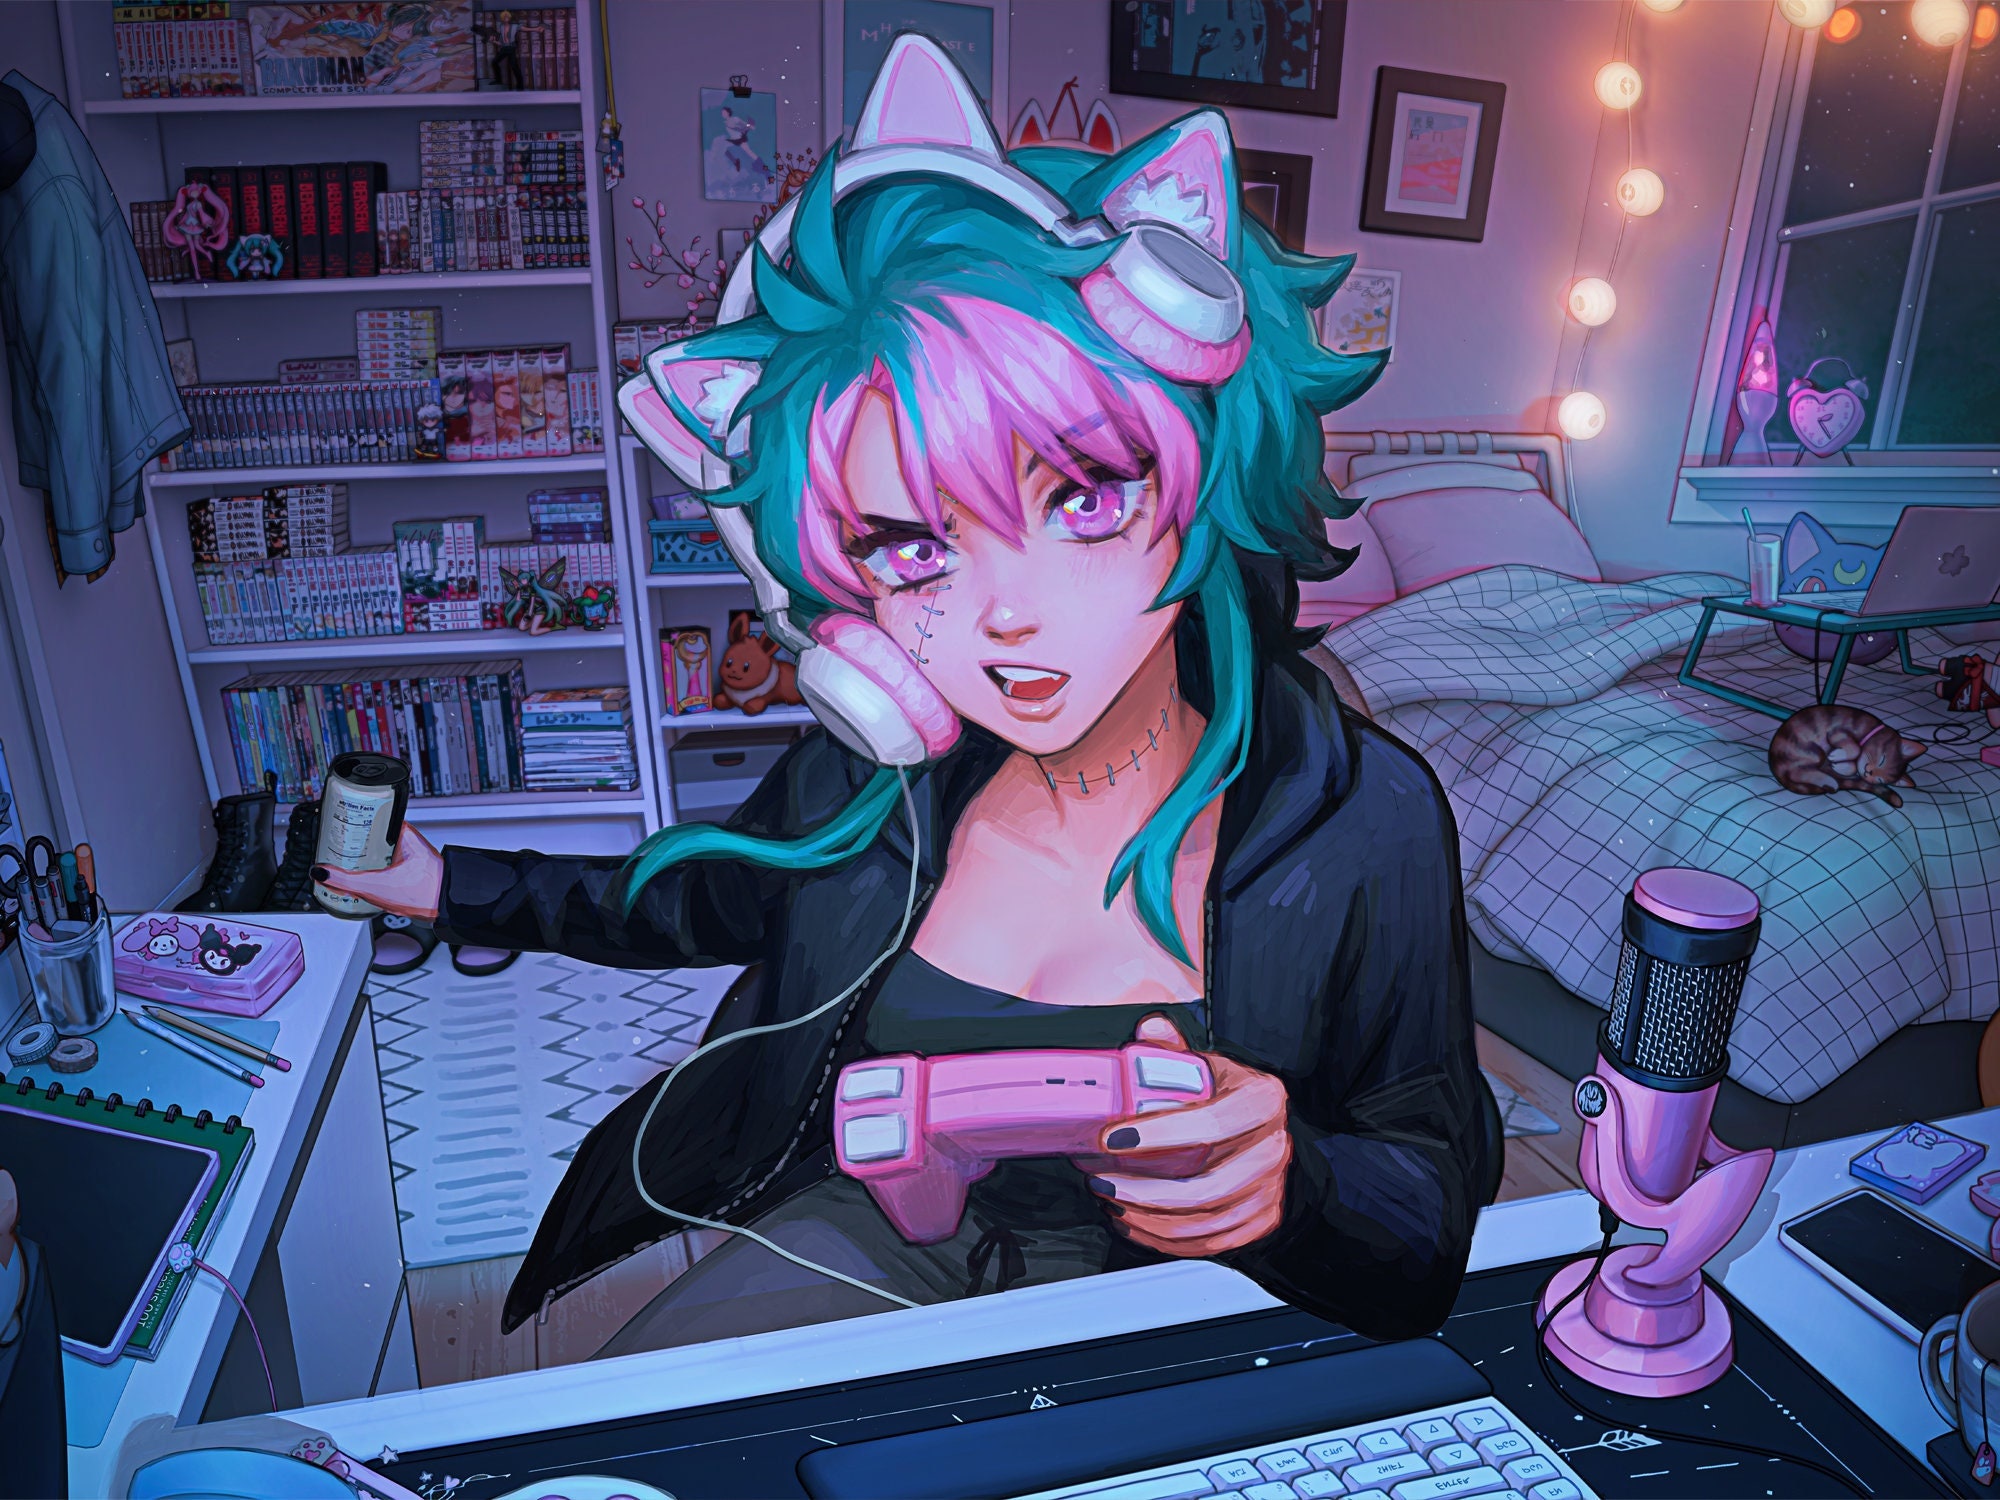 Gamer anime girl illustration wall art - TenStickers